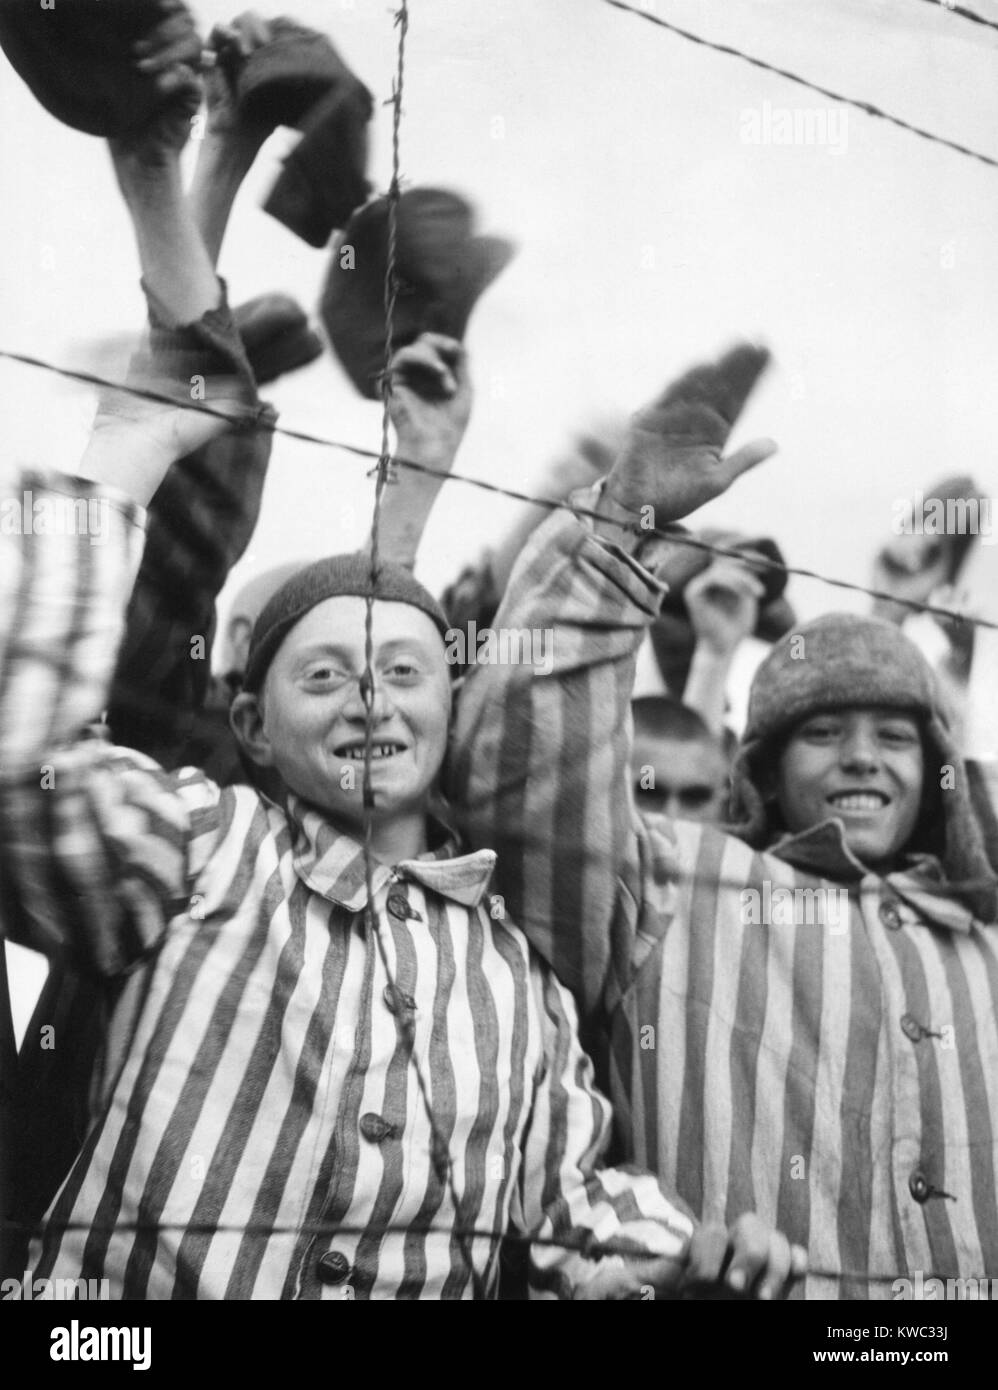 Prigionieri di Dachau onda e allietare il settimo US Army liberatori da dietro un filo spinato. Aprile 29, 1945, guerra mondiale 2 (BSLOC 2015 13 20) Foto Stock